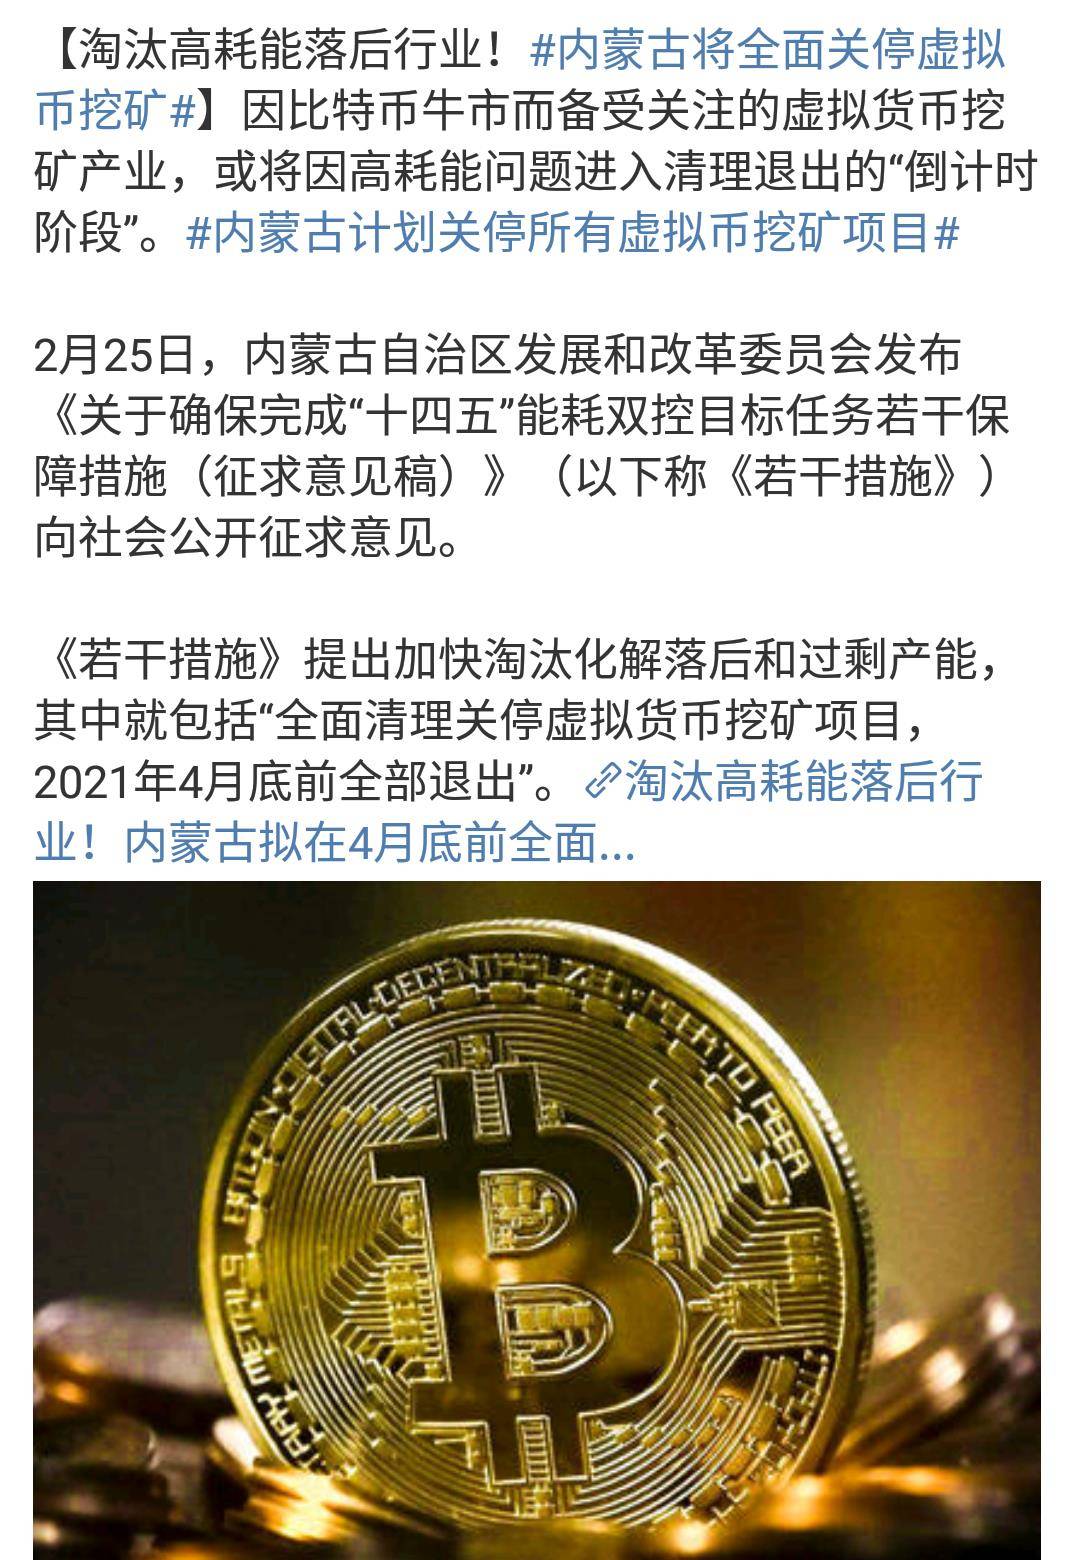 七部委联合发行虚拟货币 中国为何禁止比特币虚拟货币交易